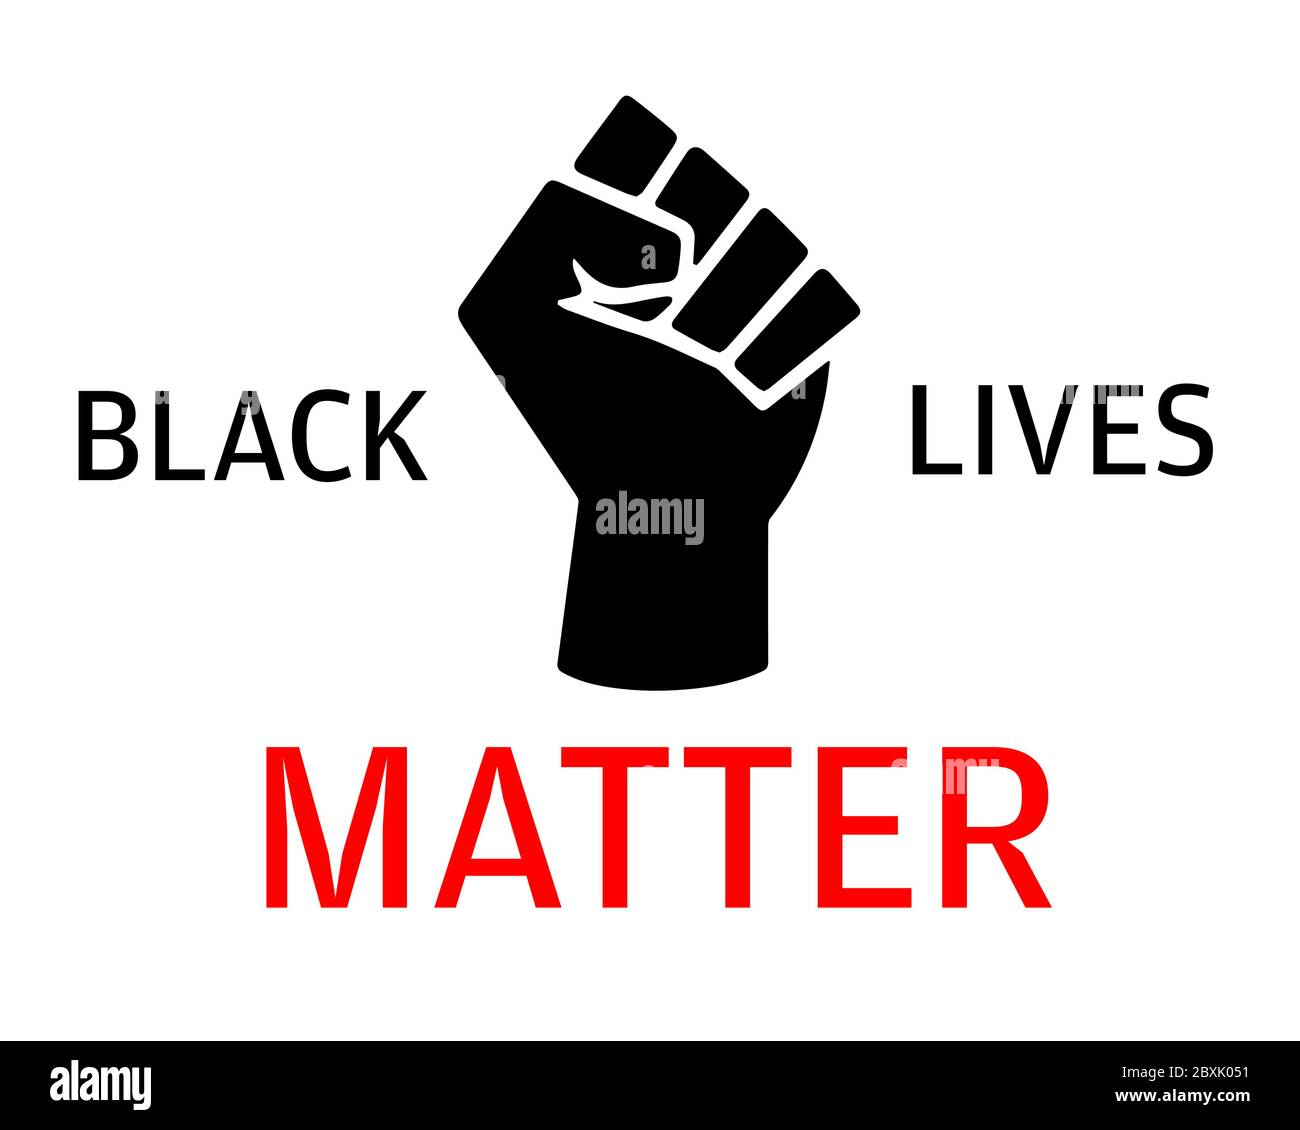 Illustrazione grafica Black Lives Matter (BLM) da utilizzare come poster per aumentare la consapevolezza sulla disuguaglianza razziale. Brutalità e pregiudizio della polizia contro Afr Illustrazione Vettoriale